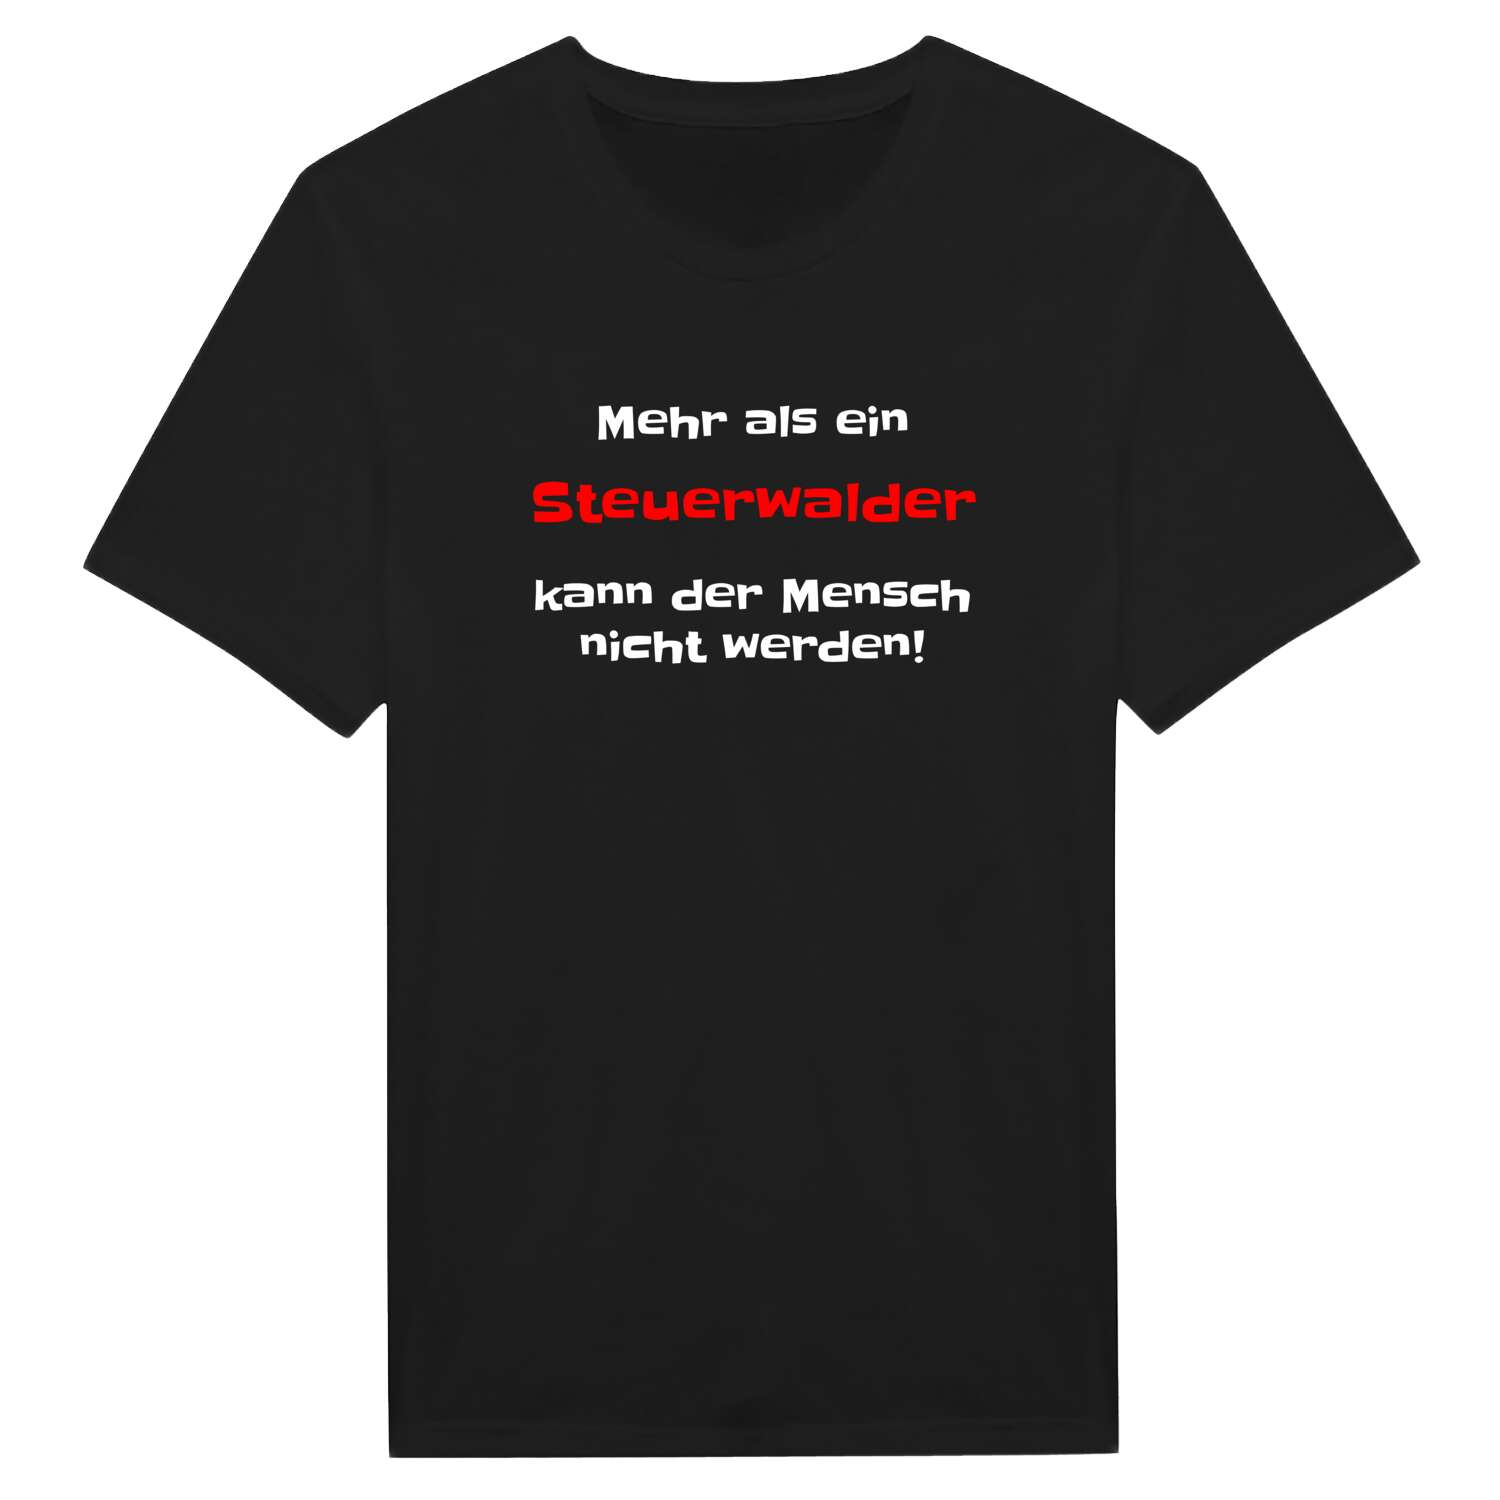 Steuerwald T-Shirt »Mehr als ein«